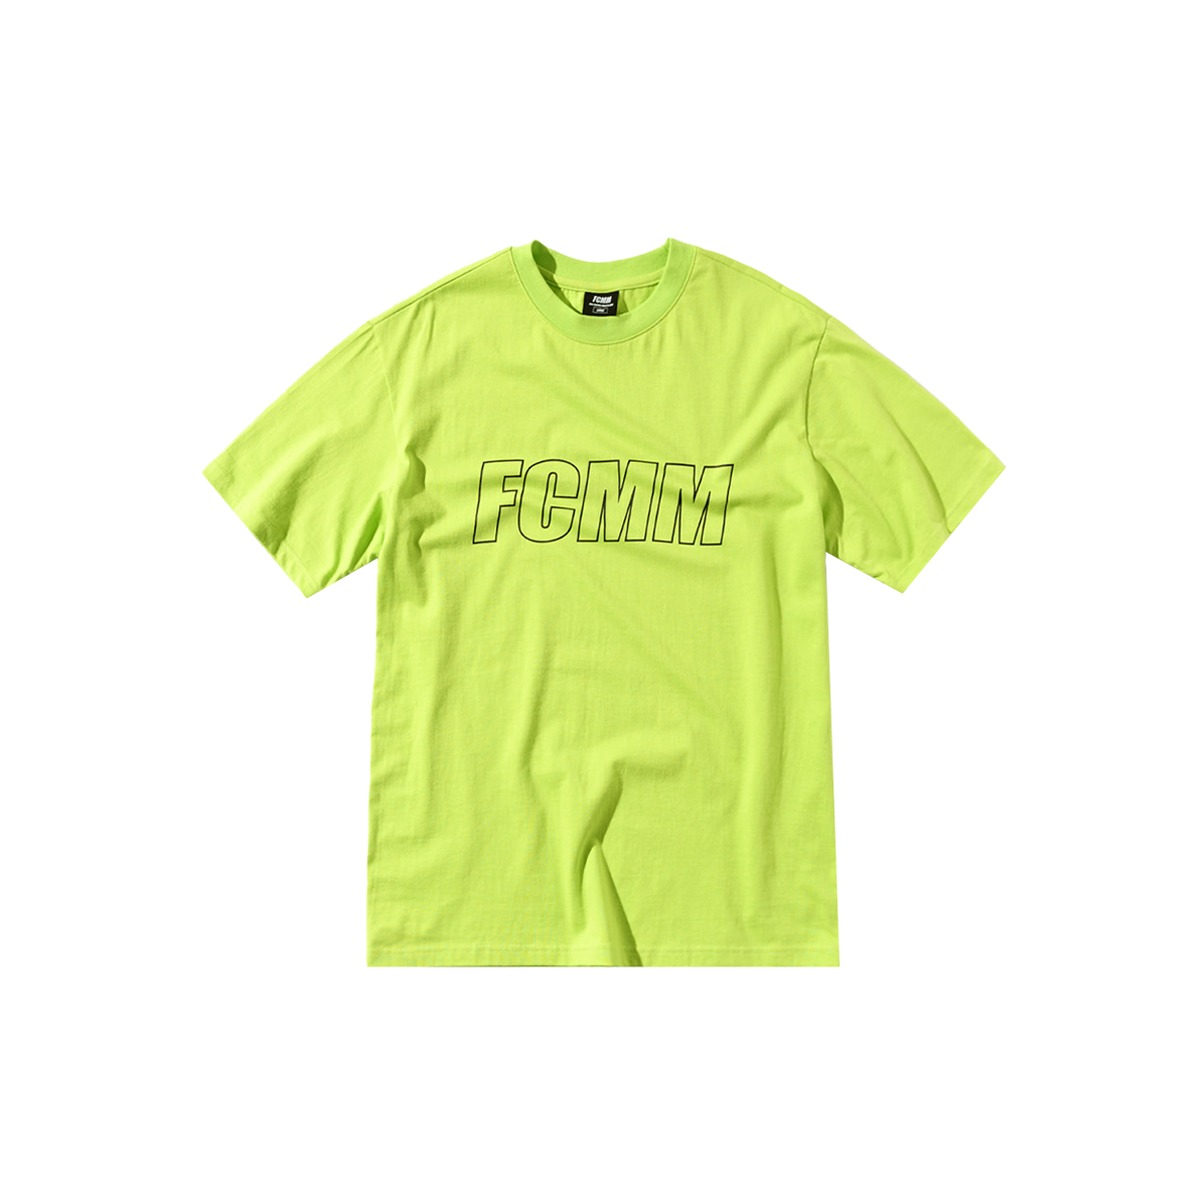 리니어 로고 티셔츠 - 네온라임